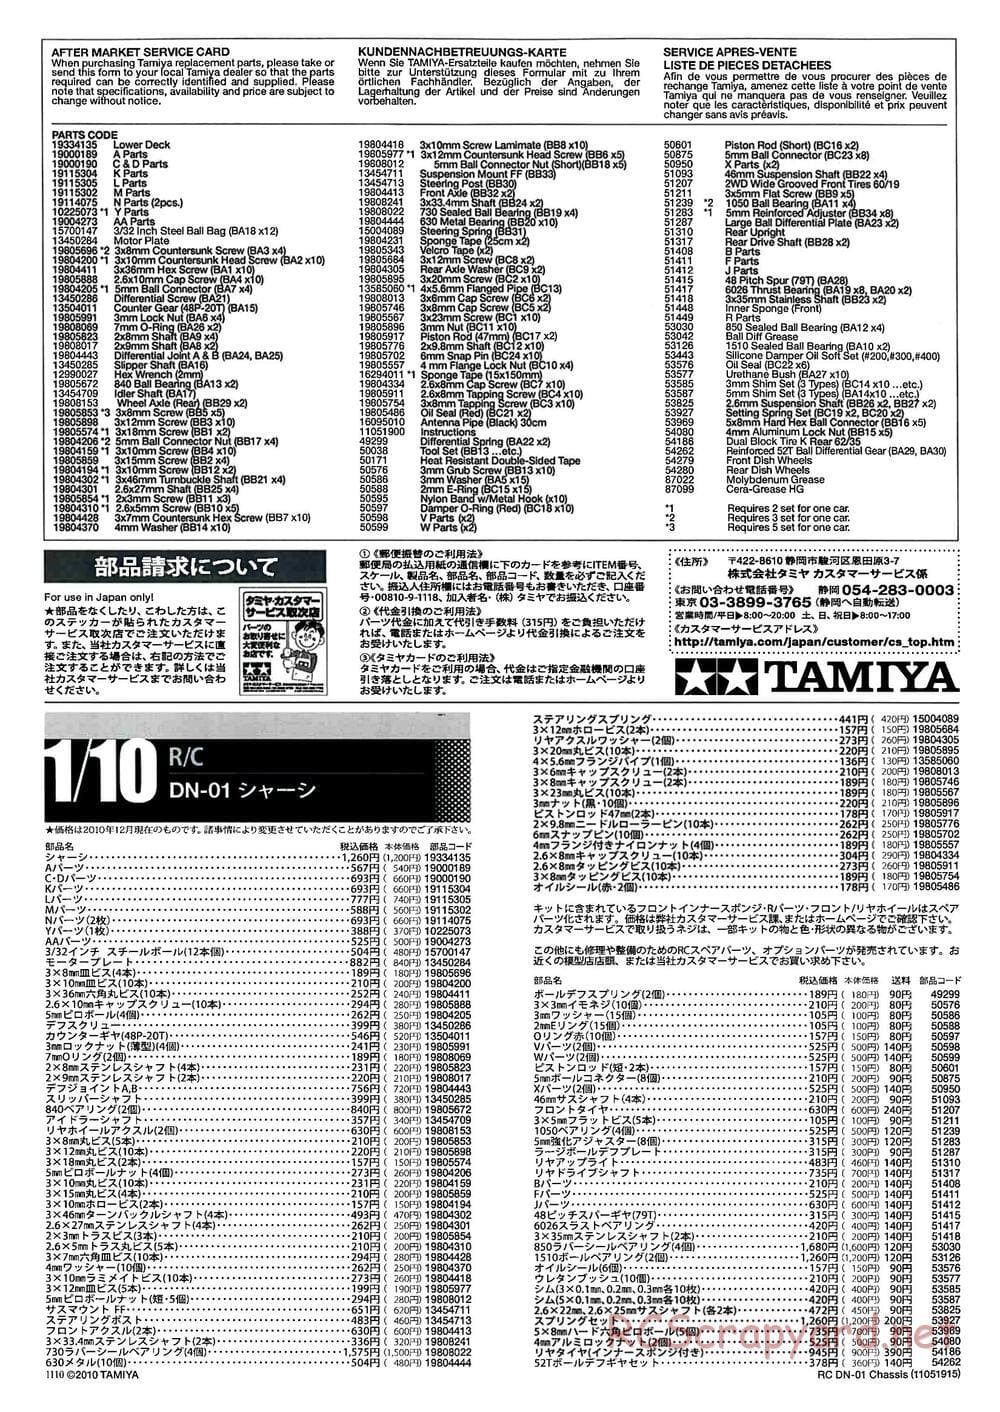 Tamiya - DN-01 Chassis - Manual - Page 25